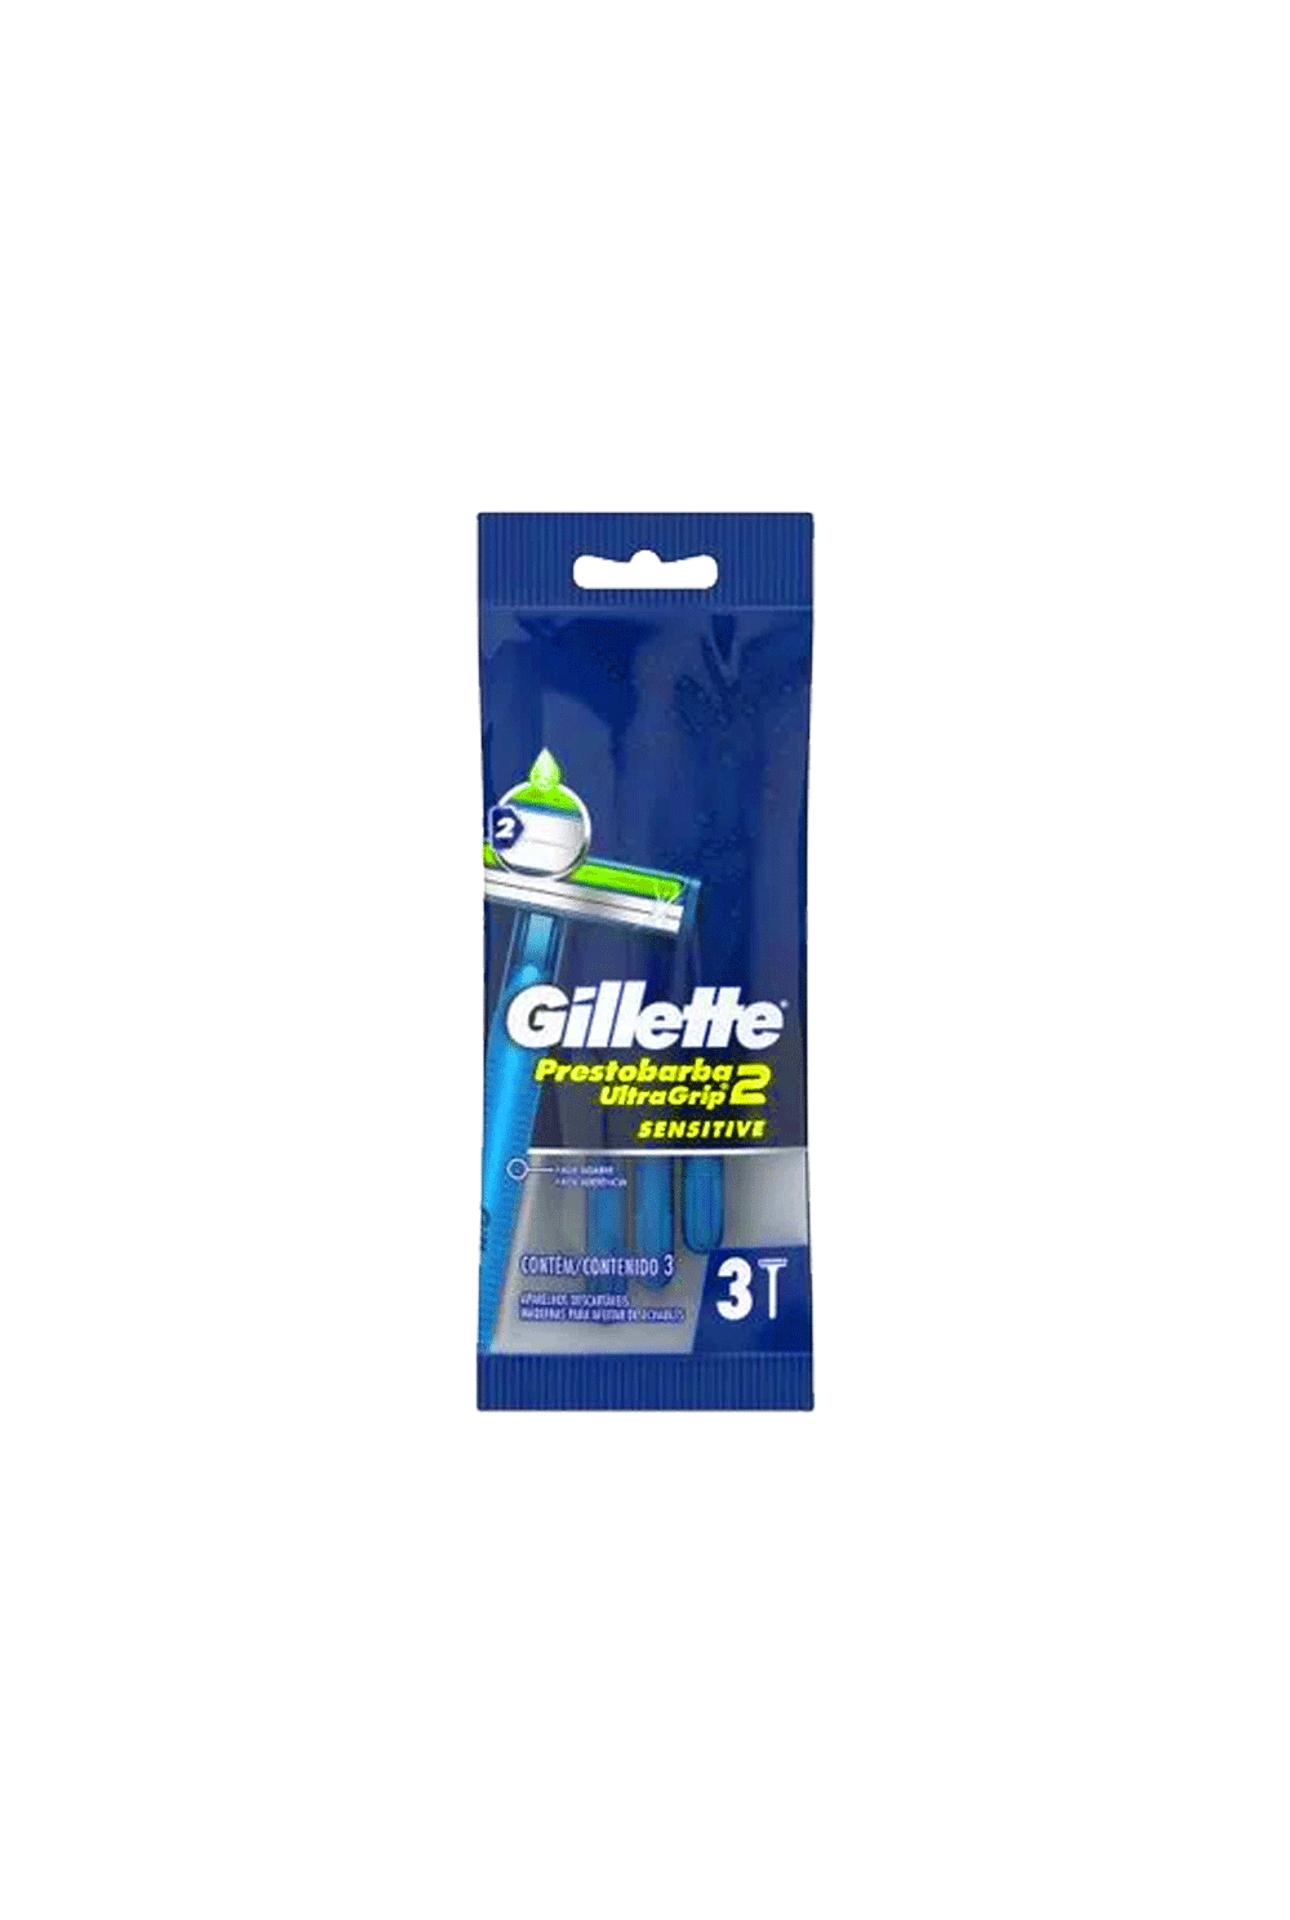 Gillette-Maquina-de-Afeitar-Gillette-Ultragrip-x-3-uni-7500435198738_img1